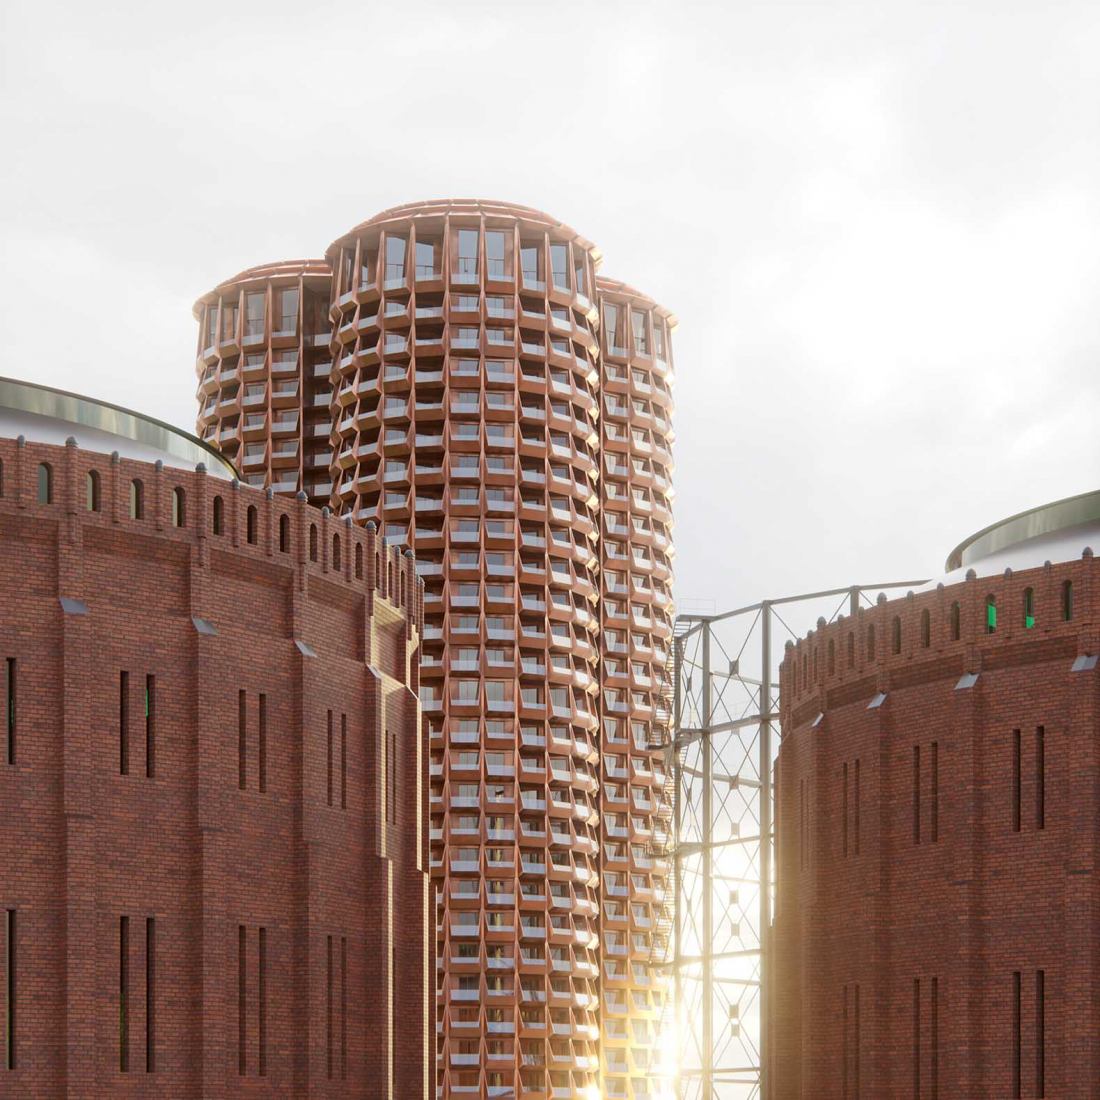 Torre residencial en la histórica planta de gas de Estocolmo por Cobe y Yellen. Visualización por Cobe y Yellon